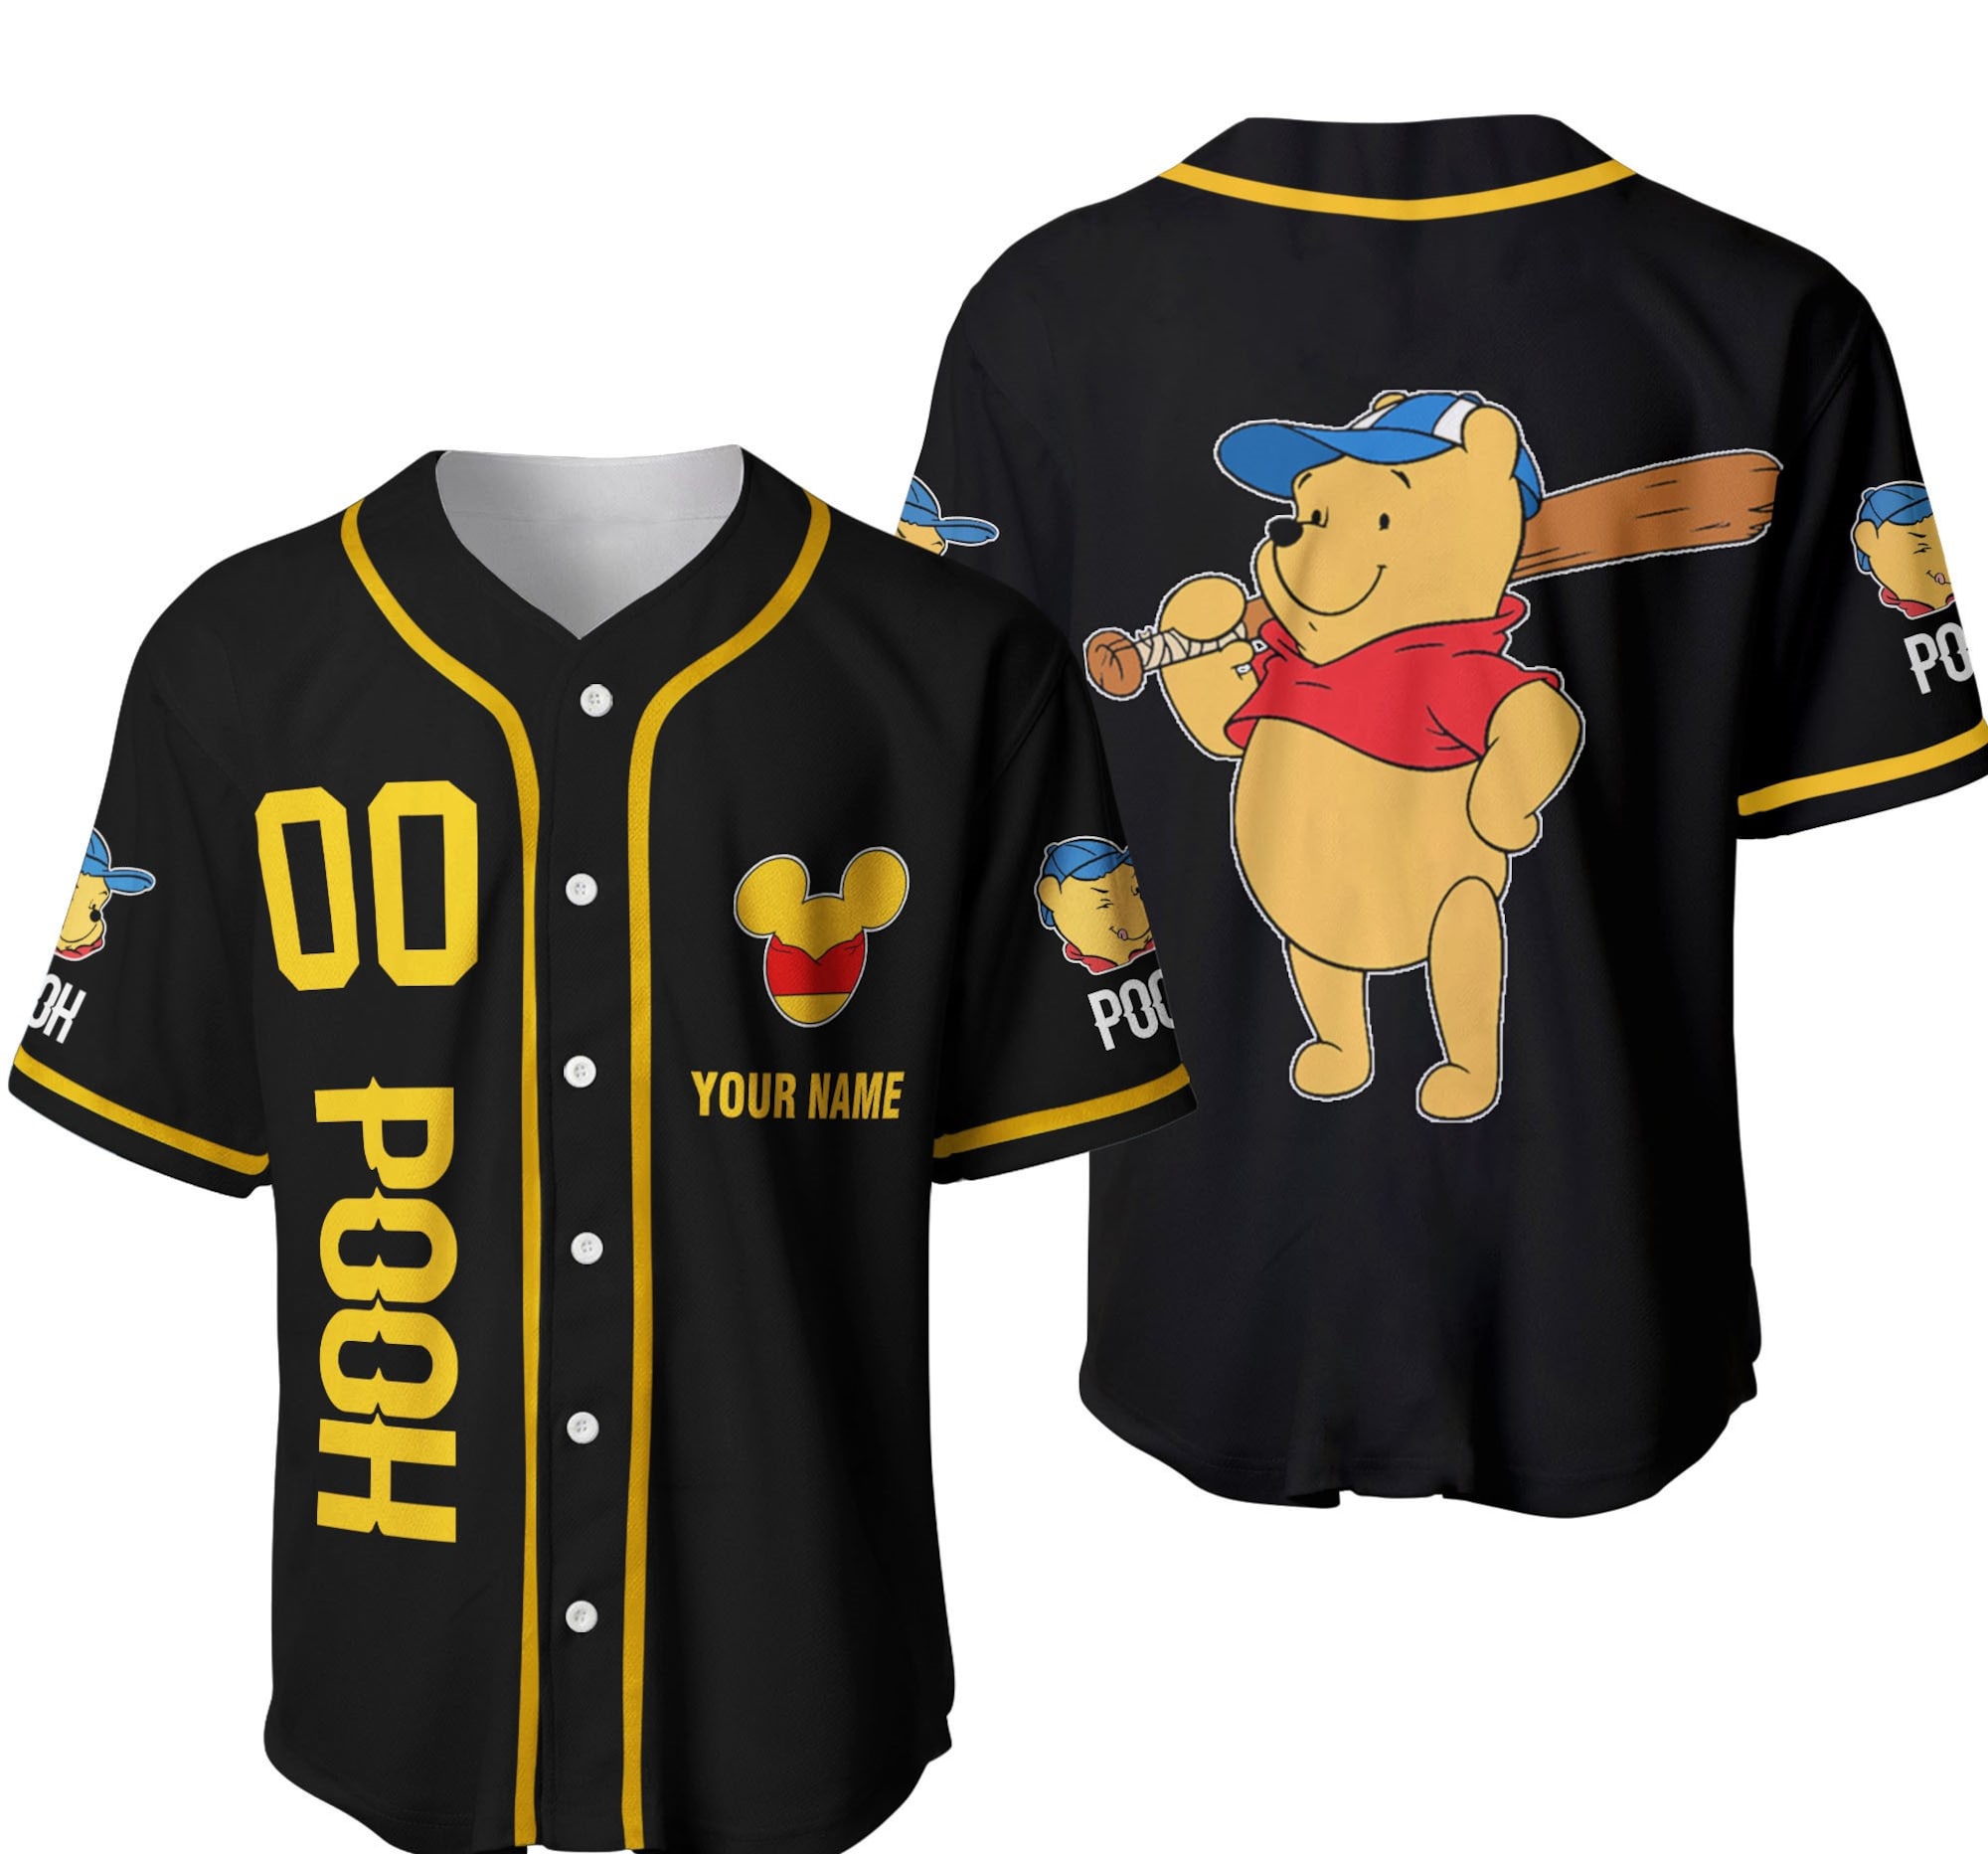 Pooh Black Yellow Baseball Jersey Shirt